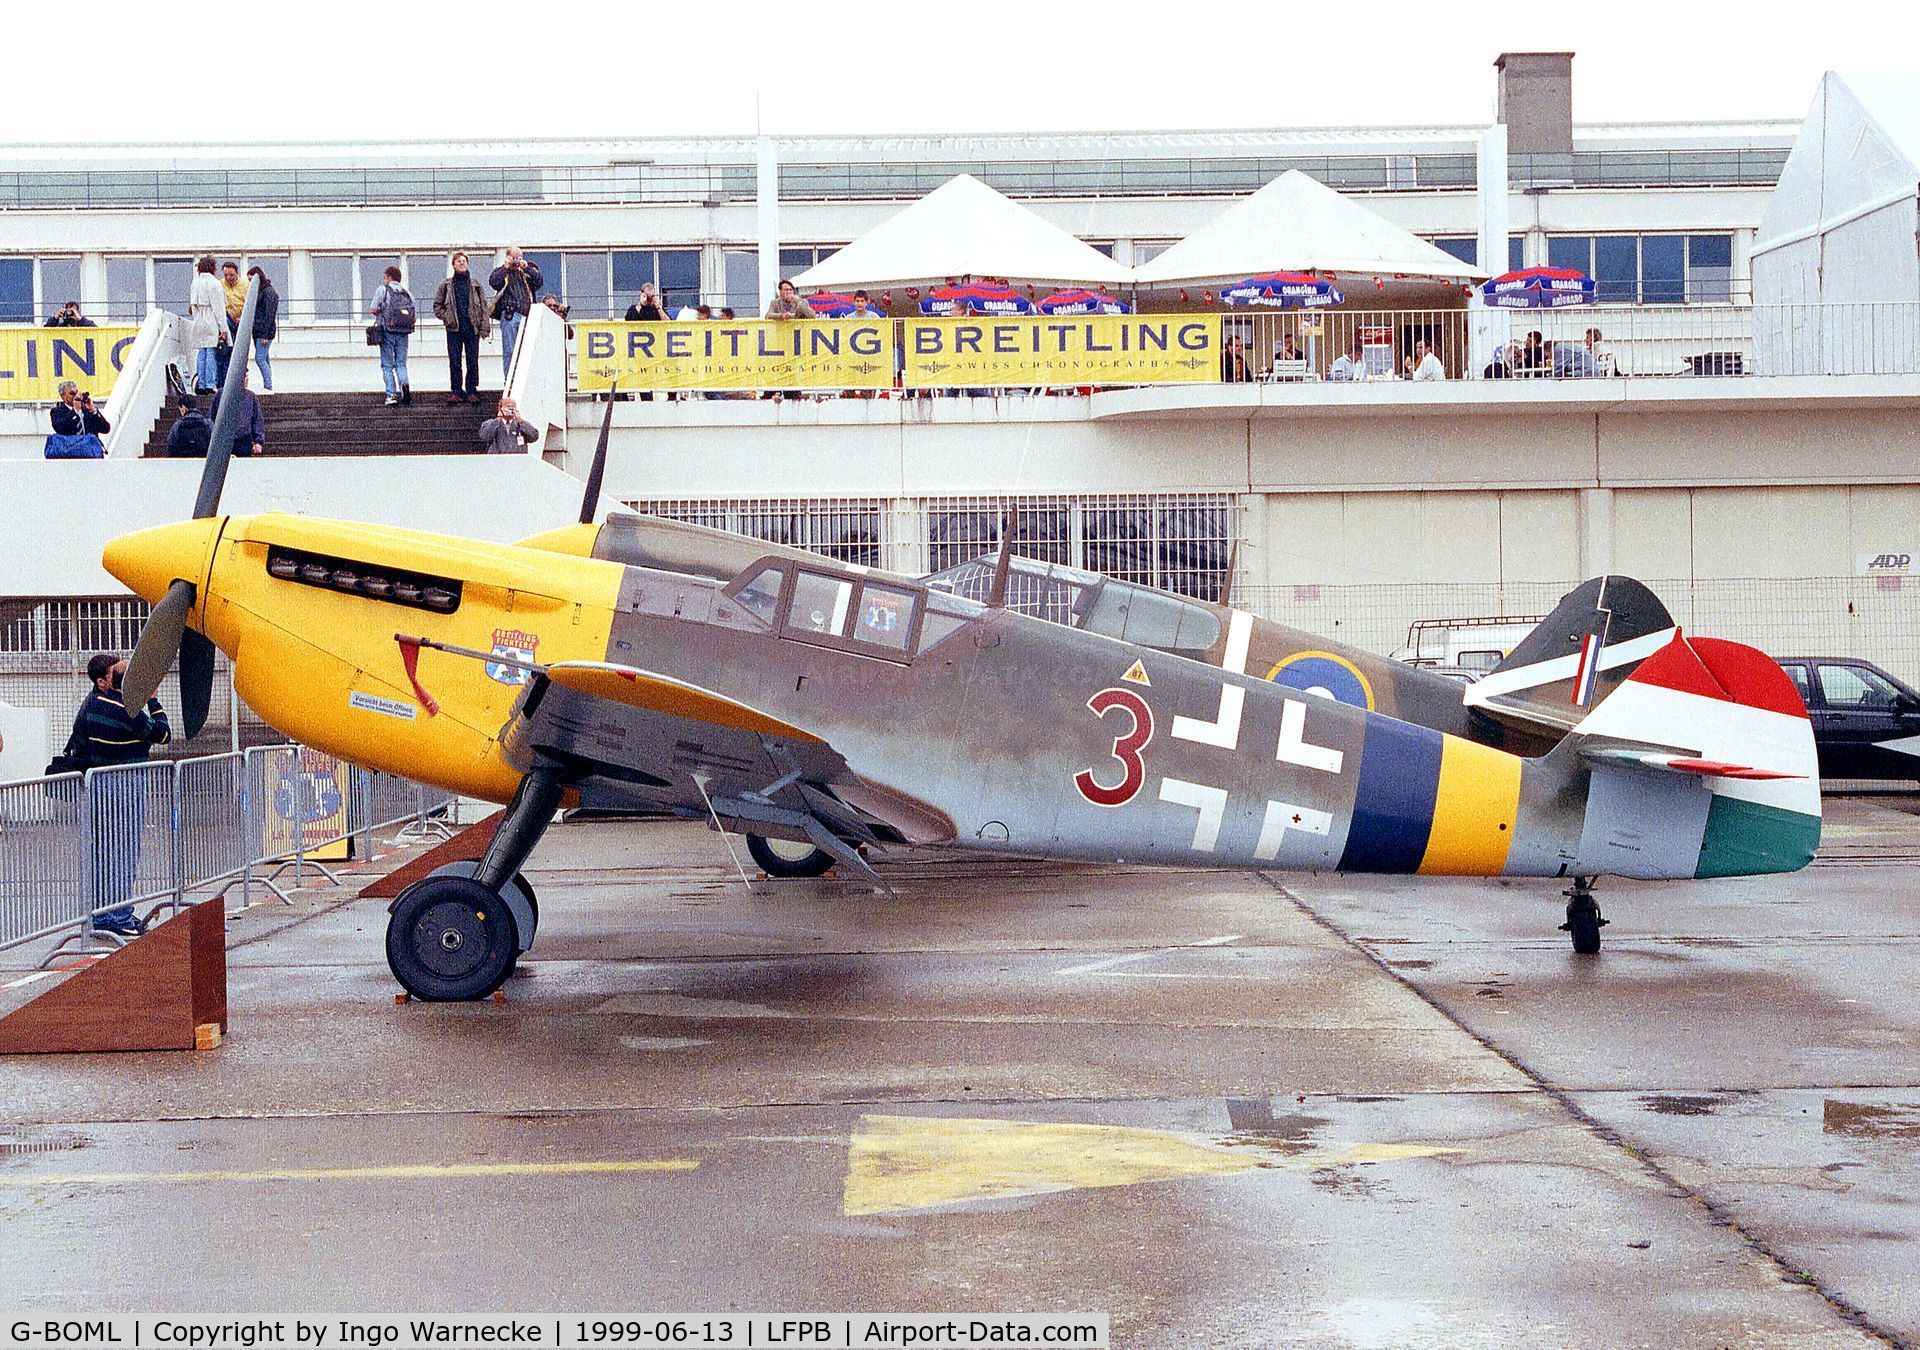 G-BOML, 1947 Hispano HA-1112-M1L Buchon C/N 151, Hispano HA-1112 M1L Buchon at the Aerosalon 1999, Paris